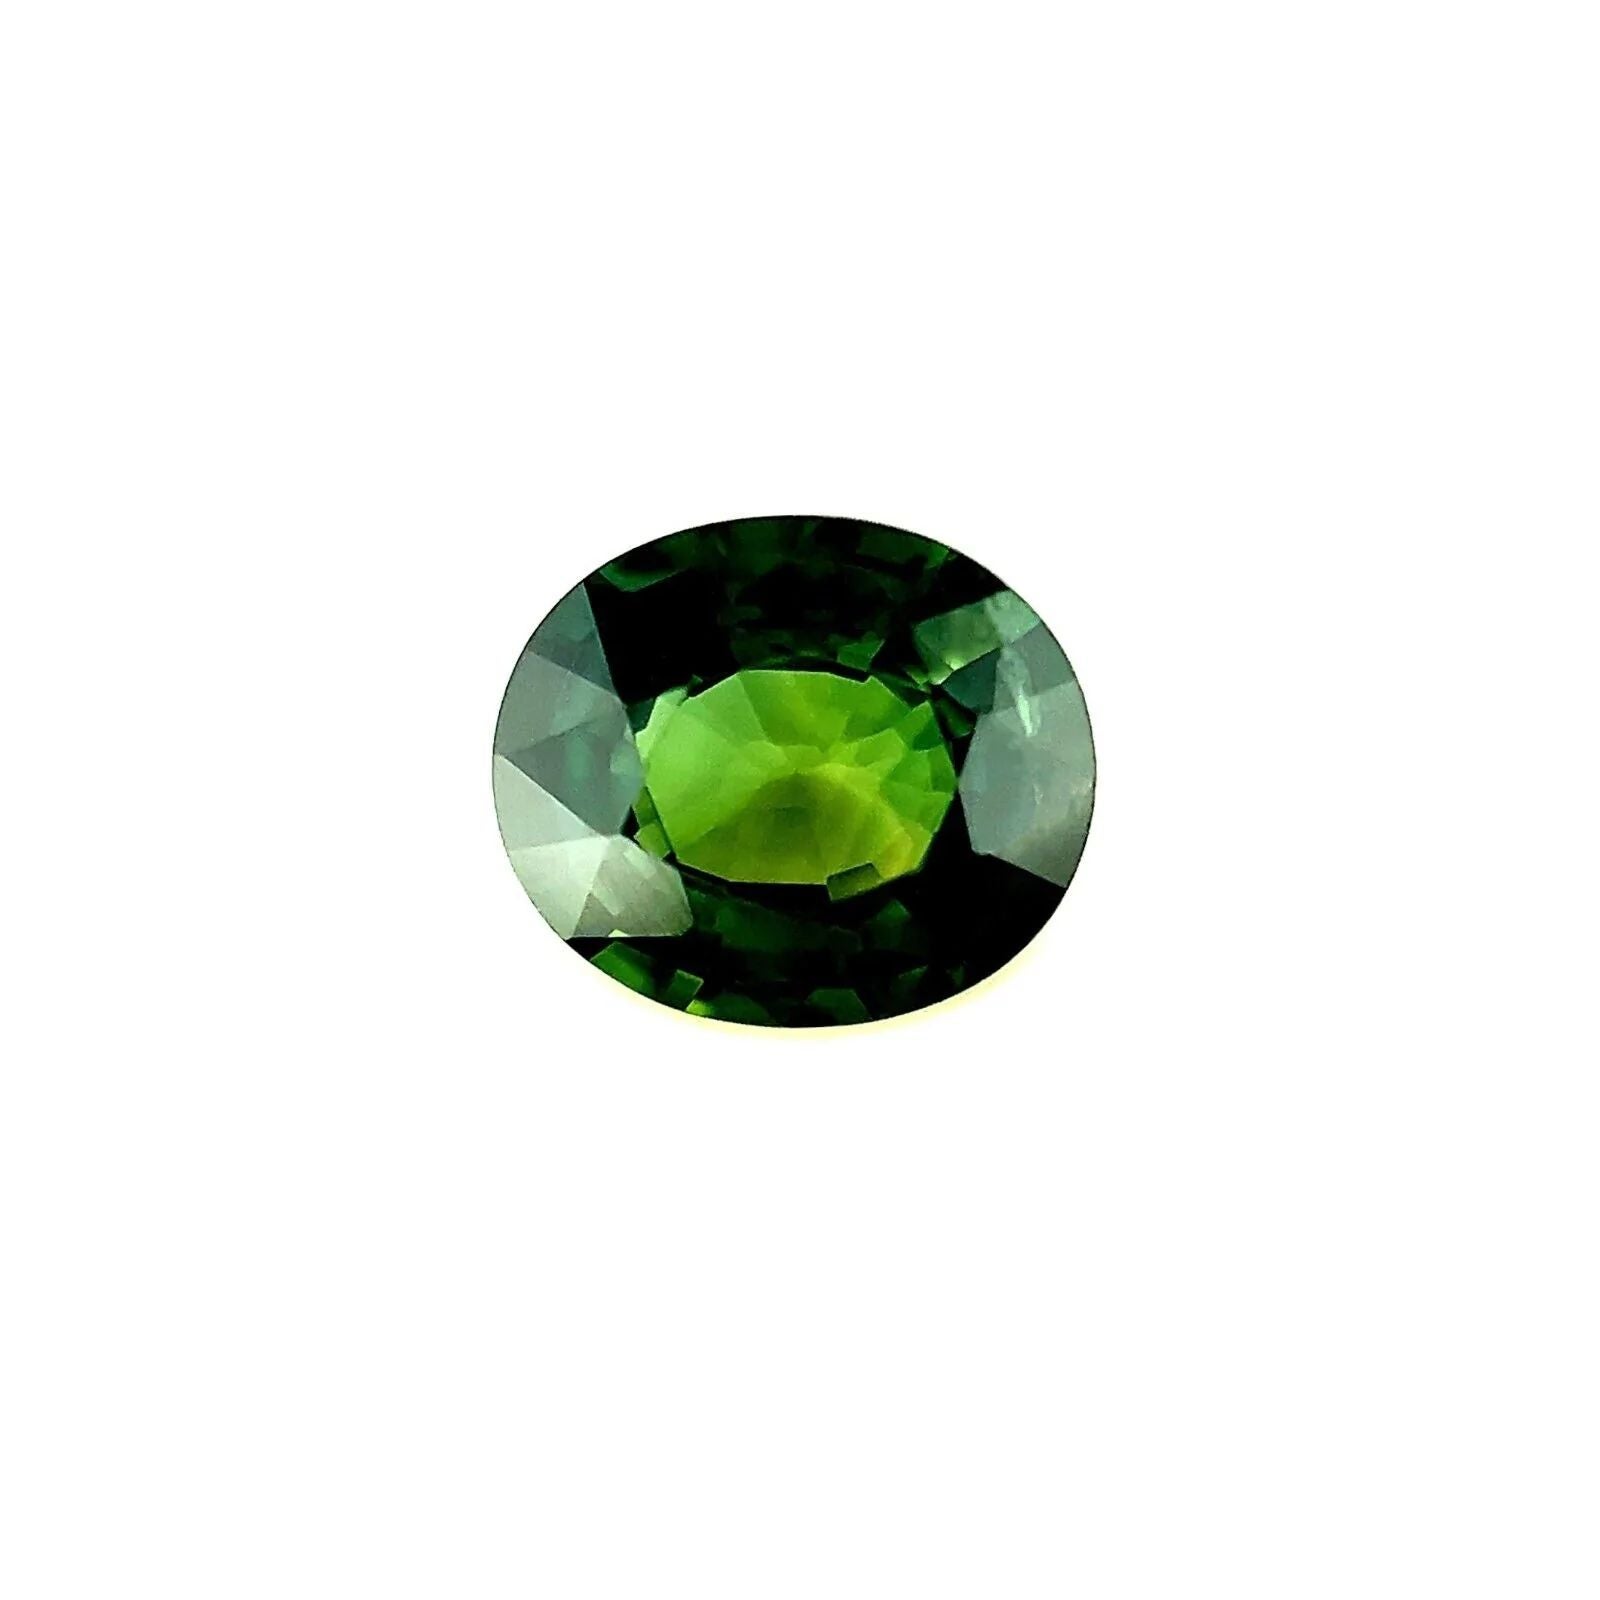 Saphir australien vert vif taille ovale 1,44 carat, pierre précieuse non sertie, 7,3 x 6,2 mm VS